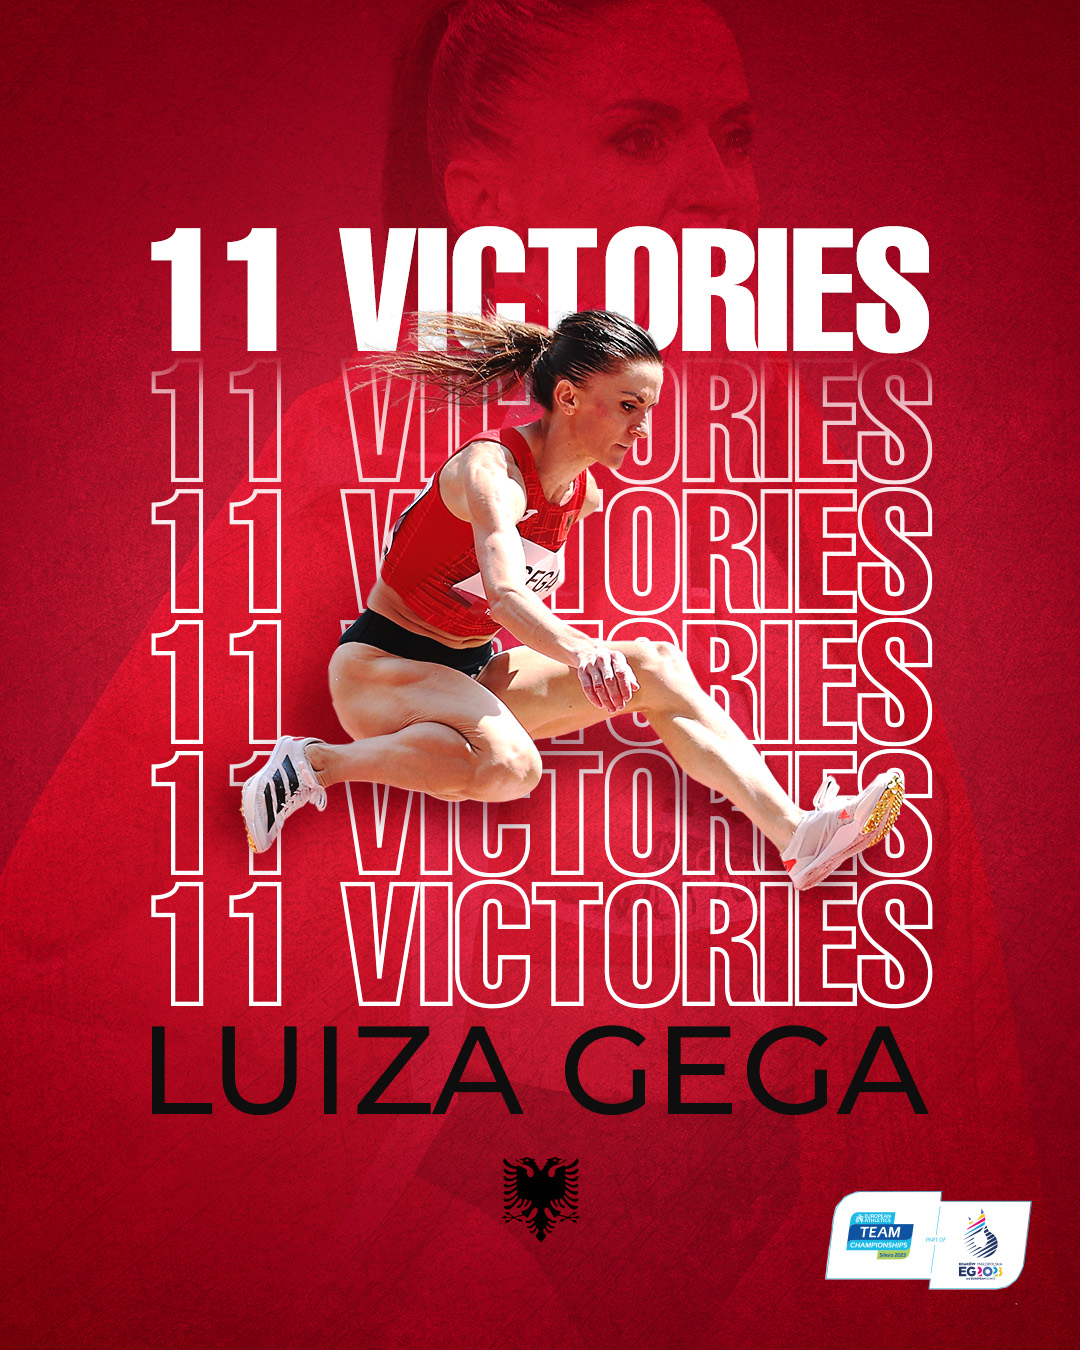 Tjetër rekord, Luiza Gega atletja më e suksesshme në historinë e kampionateve europiane të atletikës